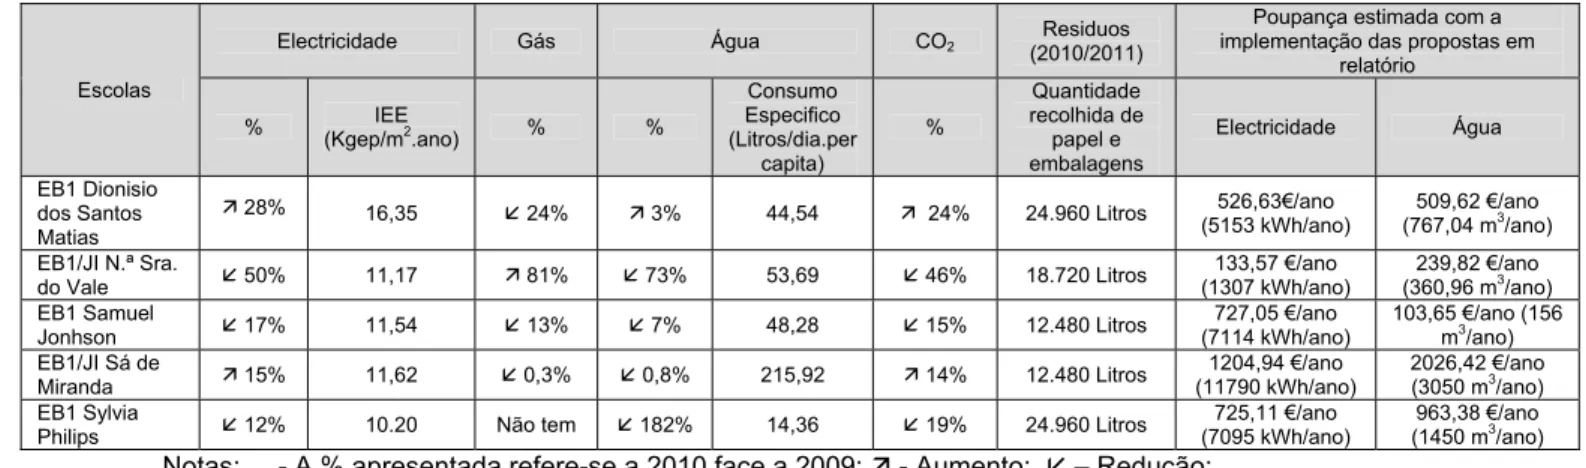 Tabela 8 - Resultados do desempenho energético e ambiental das escolas  